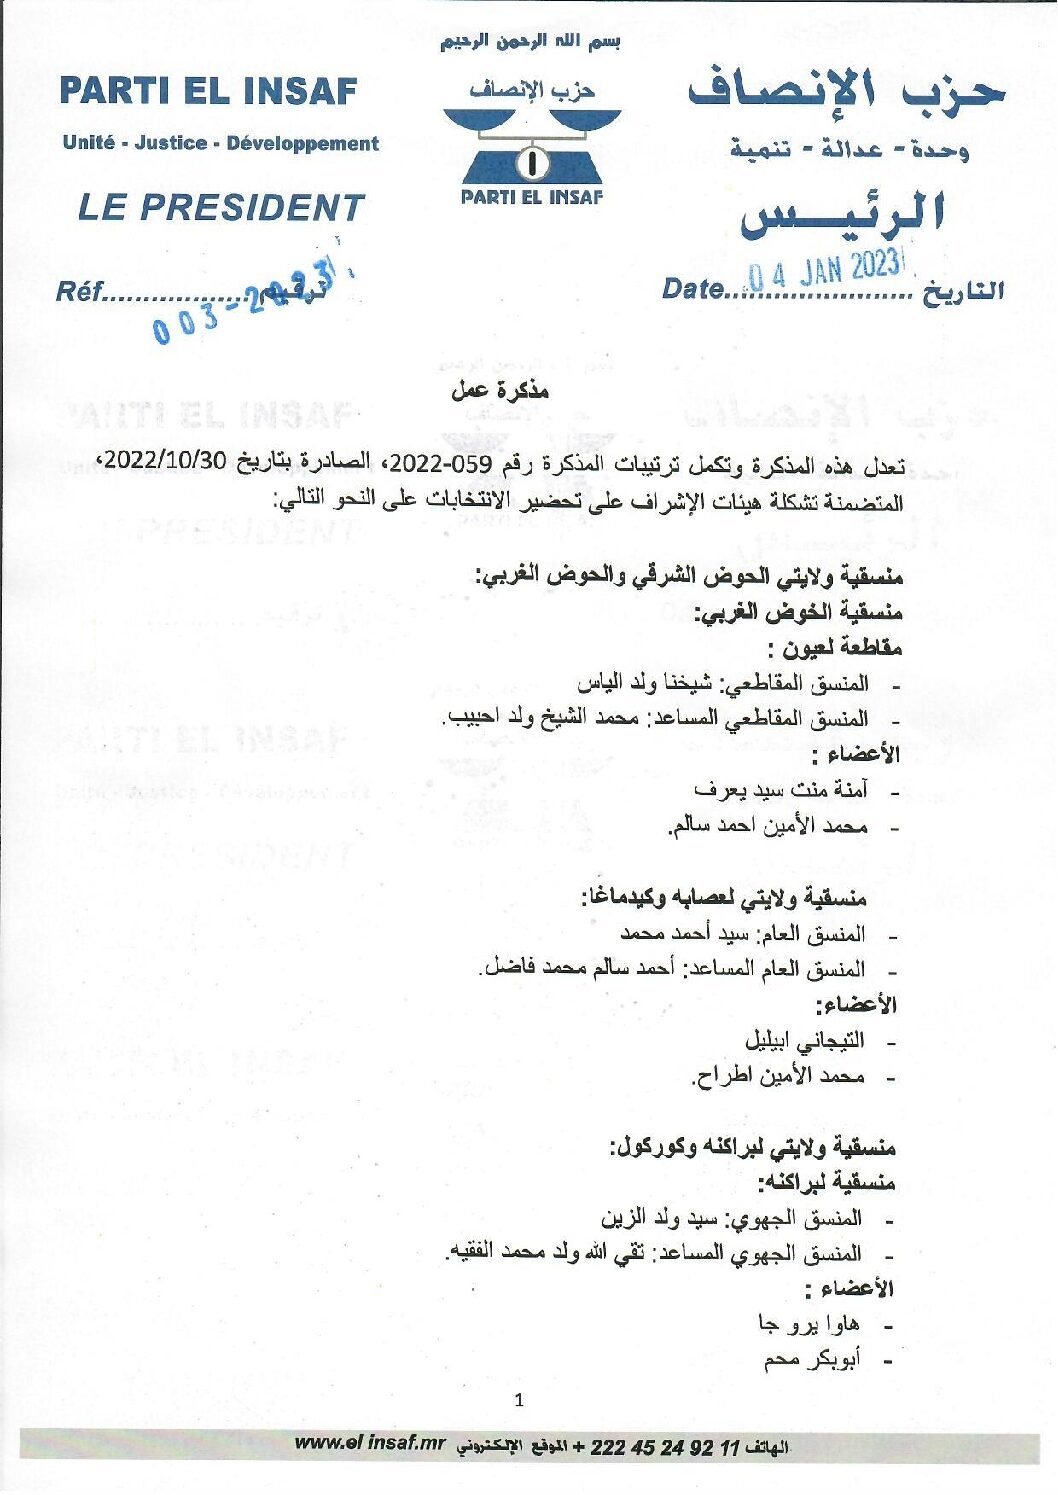 صورة رئيس الحزب يصدر مذكرة في إطار استكمال اللجان الحزبية المشرفة على انتخابات 2023